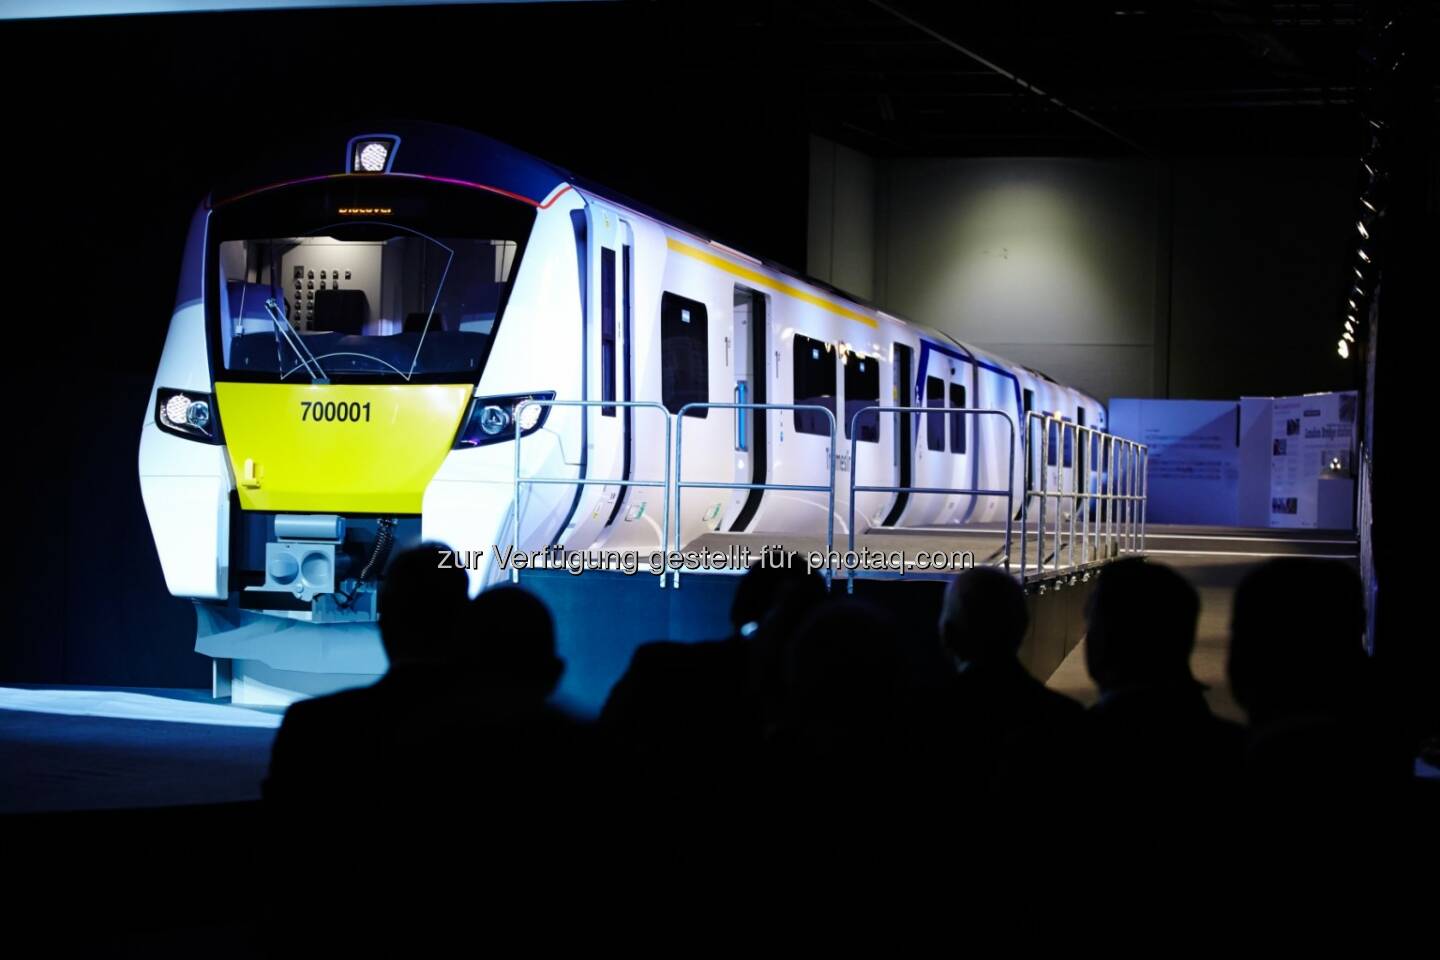 Der Britische Verkehrsminister Stephen Hammond enthüllte gestern das 1:1-Modell der neuen Desiro-City-Züge für die Thameslink-Strecke in London. (Bild: Siemens)